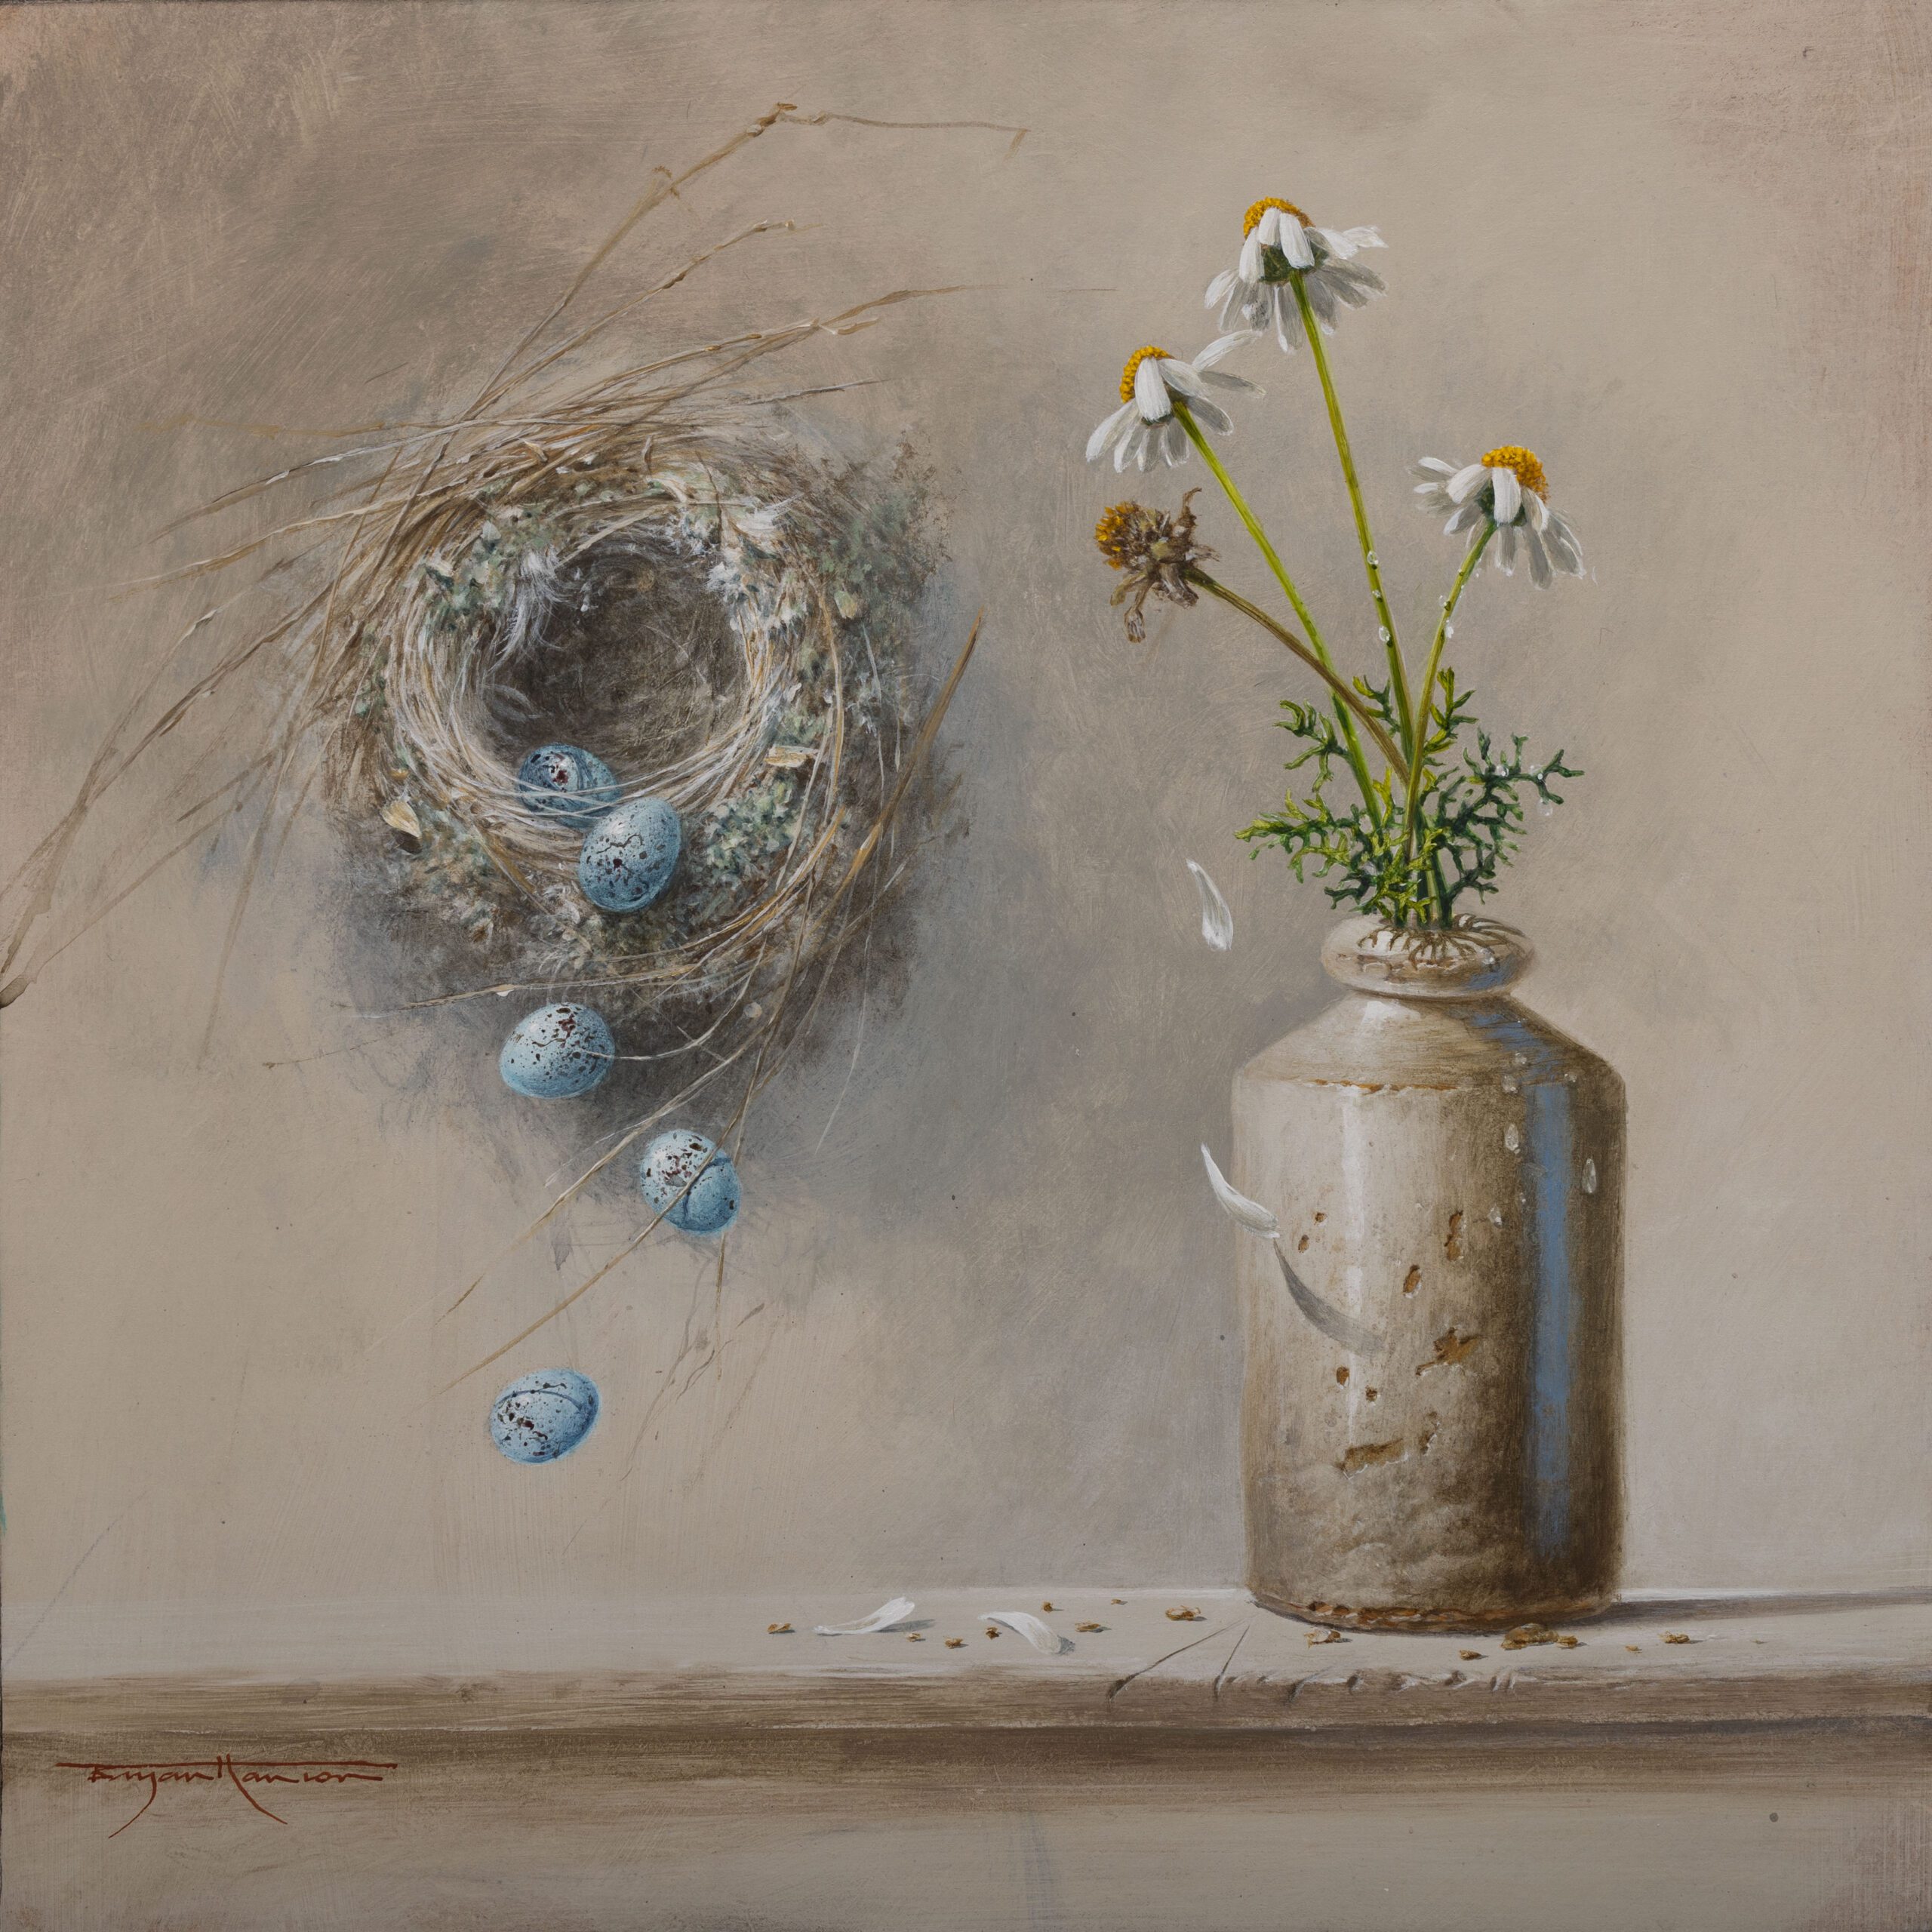 Empty Nest and Daisies (studio study)